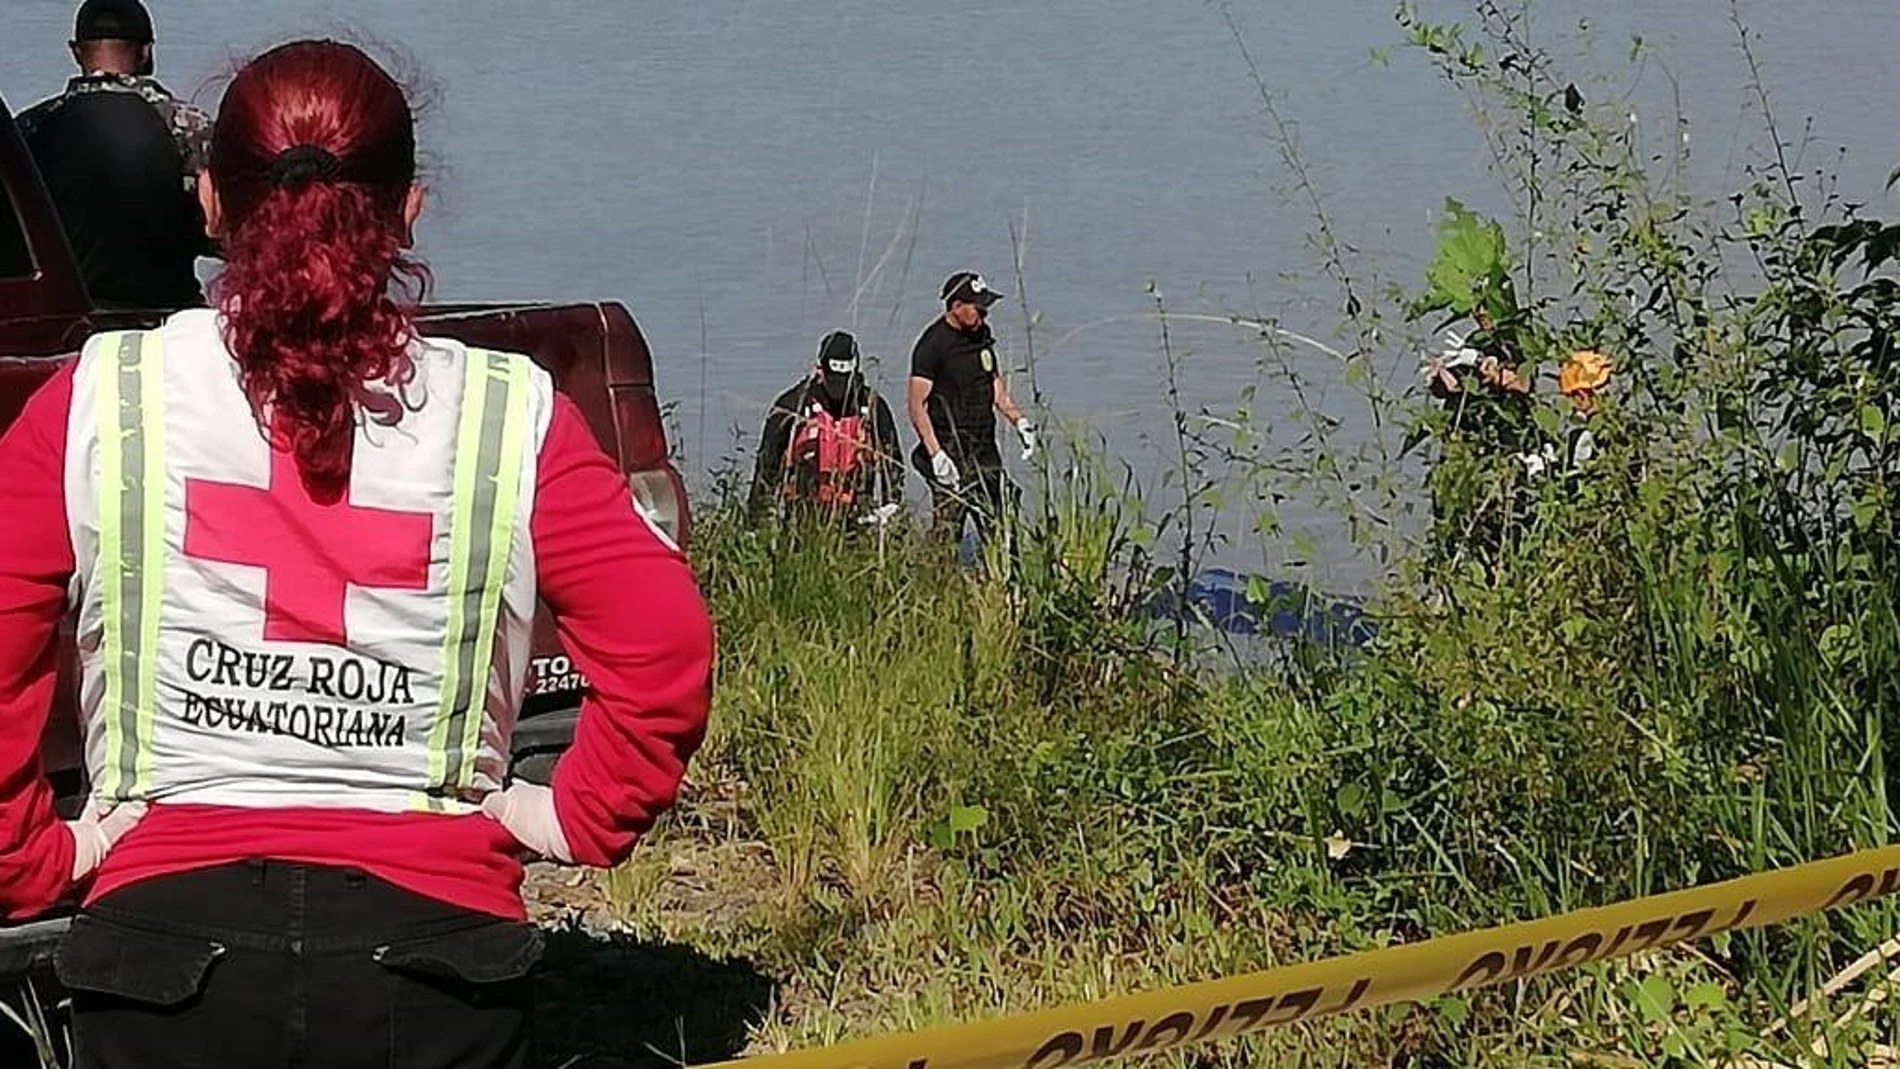 Miembros de la Cruz Roja ecuatoriana retiran el cuerpo del río